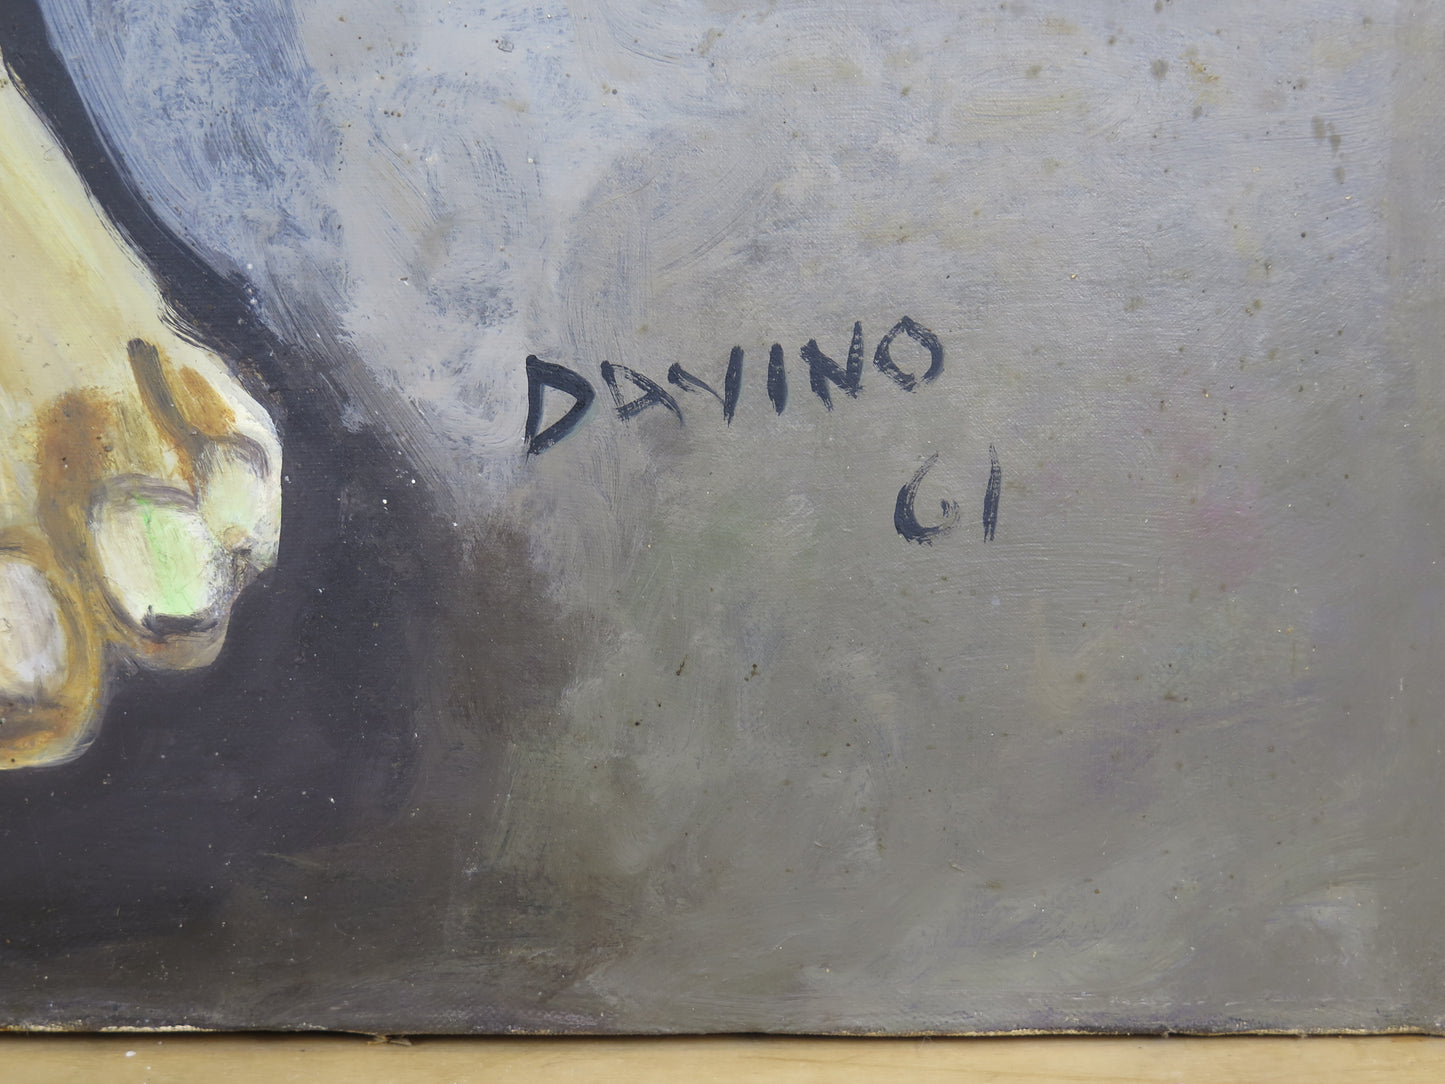 Grande dipinto ad olio su tela ritratto pescatore gigante pittore Davino Barsella Viareggio VG